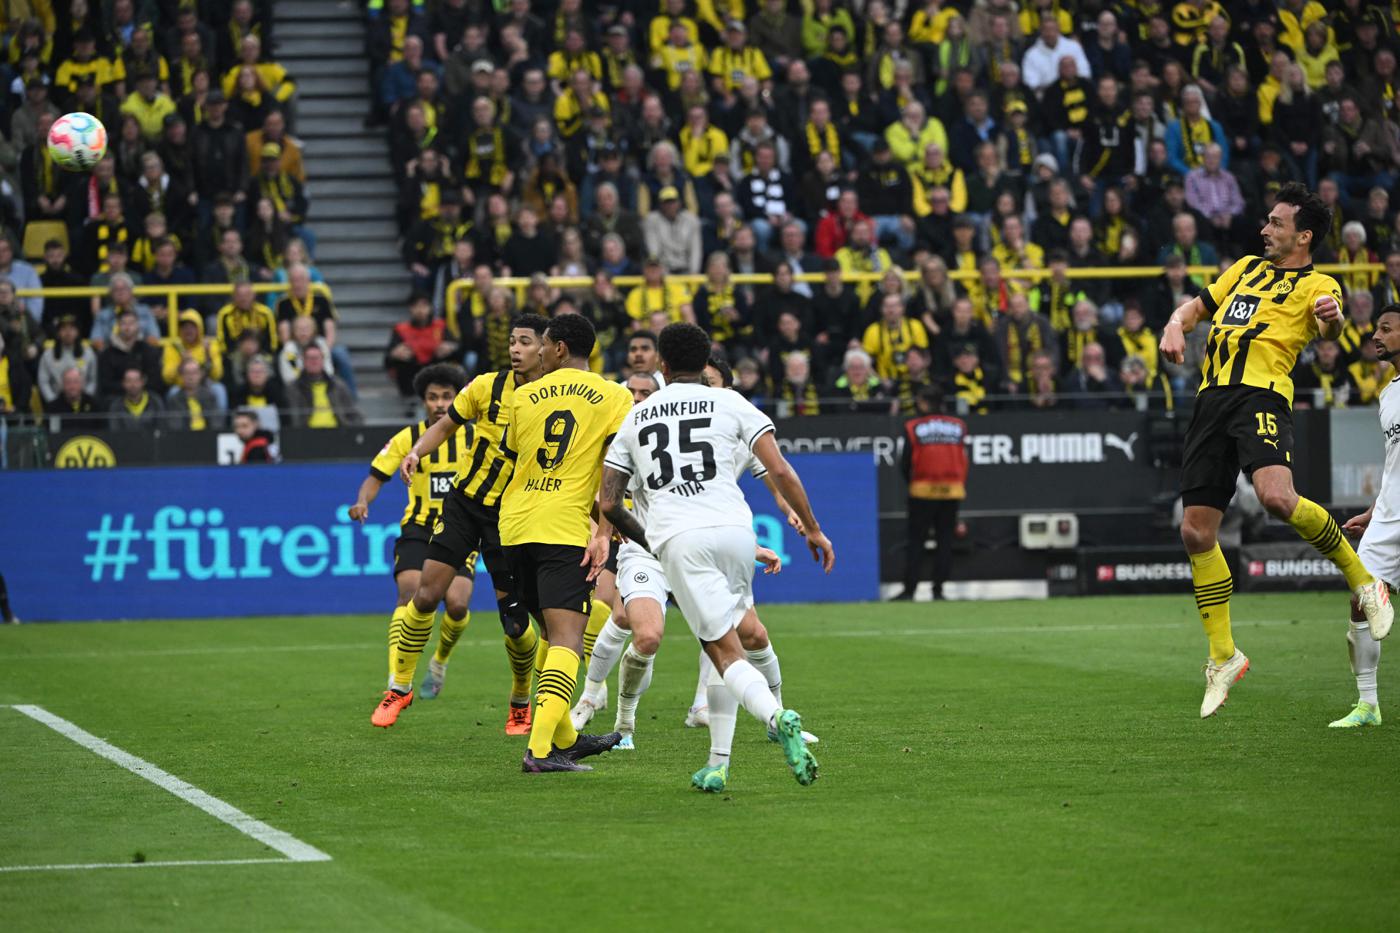 Borussia D - Eintracht - 4-0. Deutsche Meisterschaft, Runde 29. Spielbericht, Statistik.